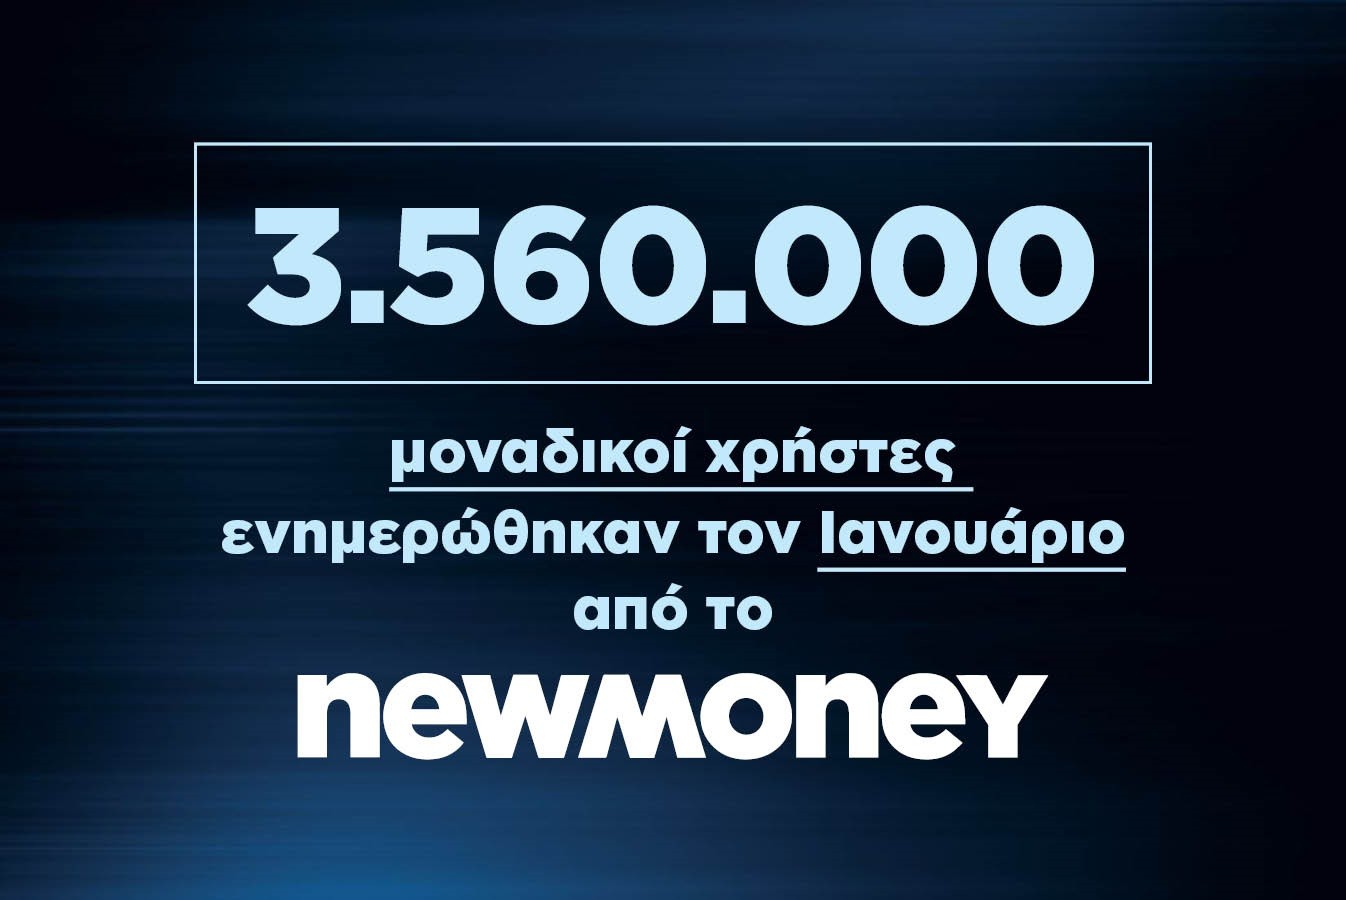 3.560.000 μοναδικοί χρήστες ενημερώθηκαν τον Ιανουάριο από το newmoney.gr